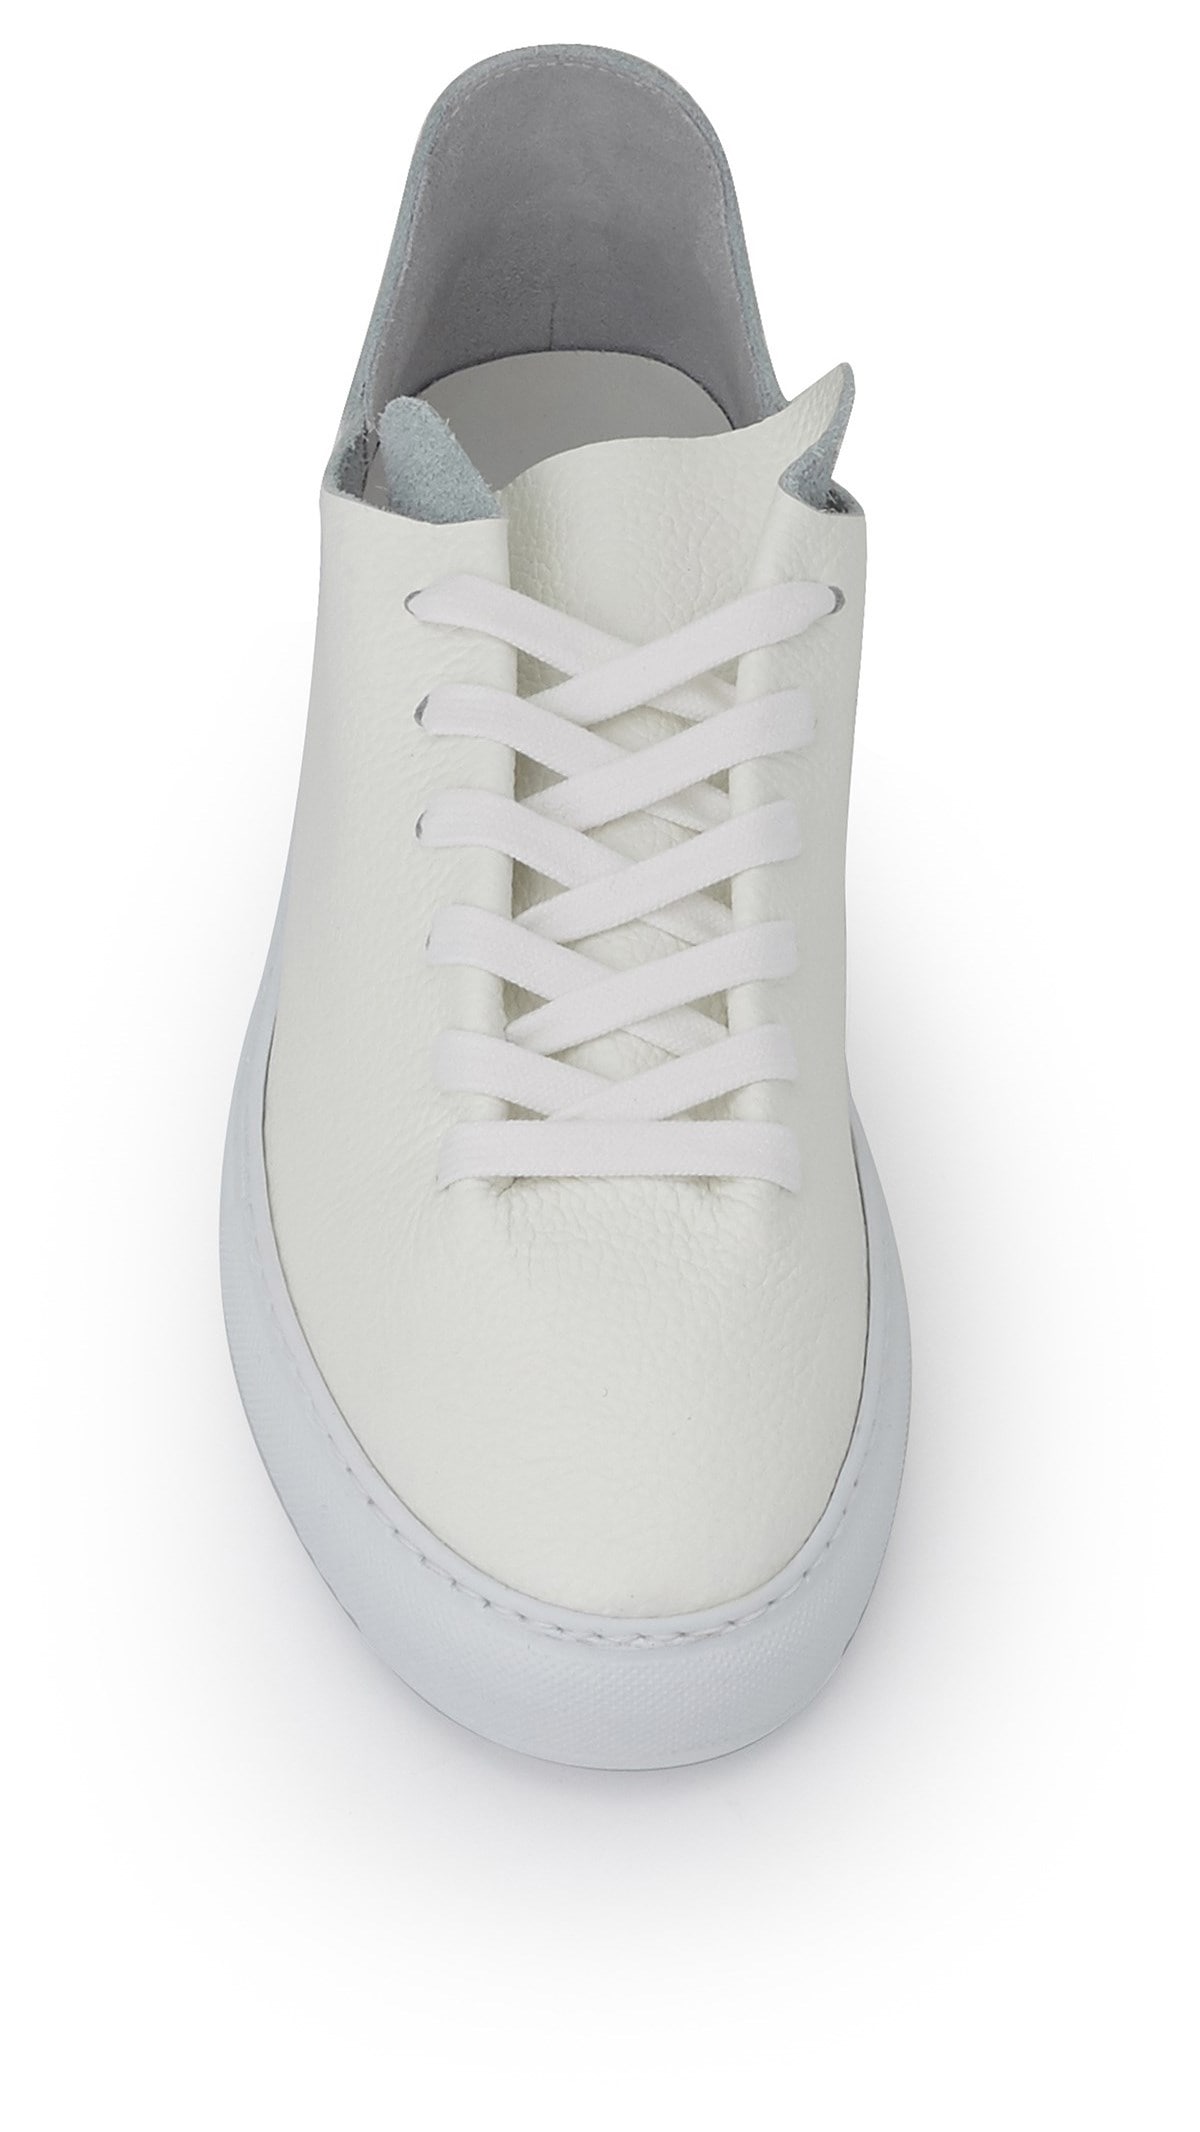 sam edelman white leather sneakers